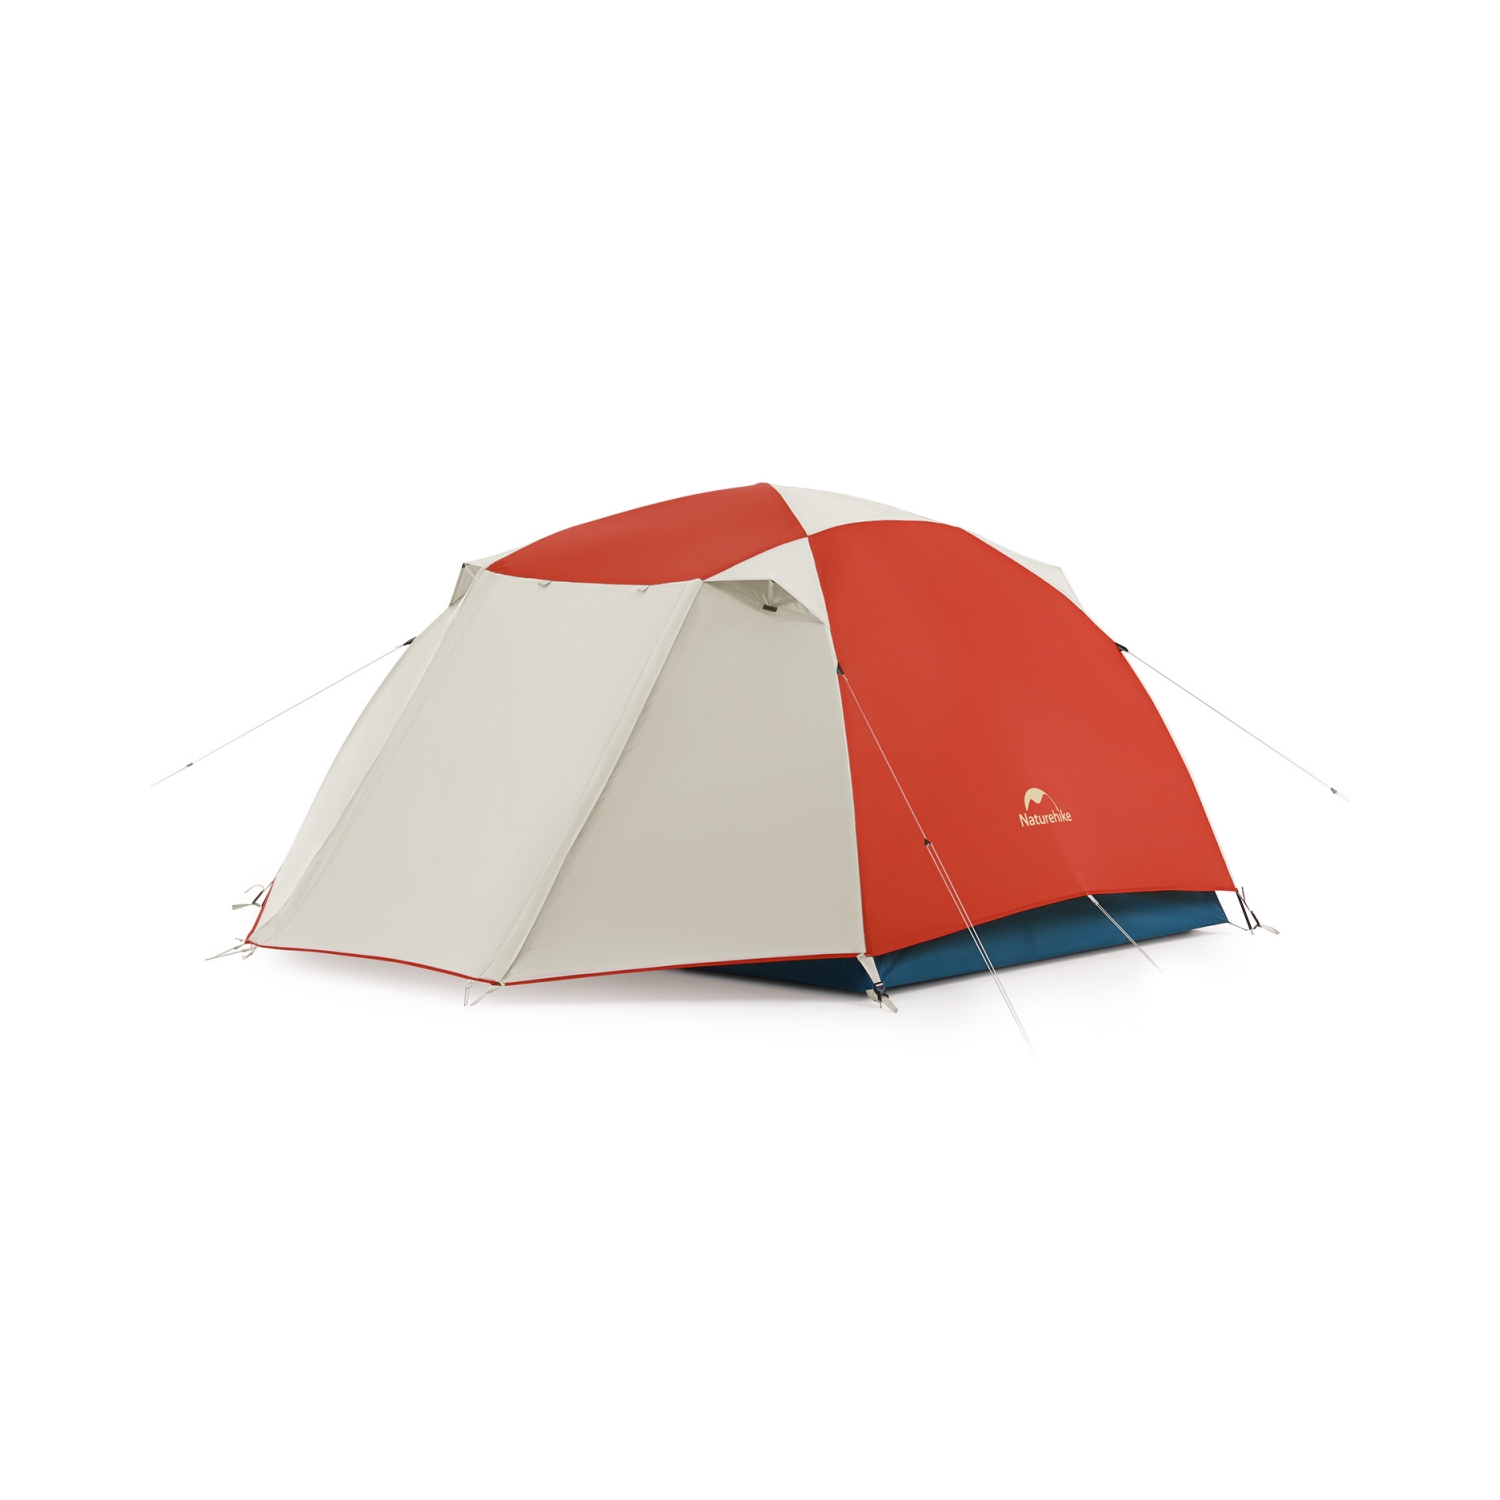 直営店 BISINNA 登山用テント 2~3人用 超軽量コンパクト キャンプ